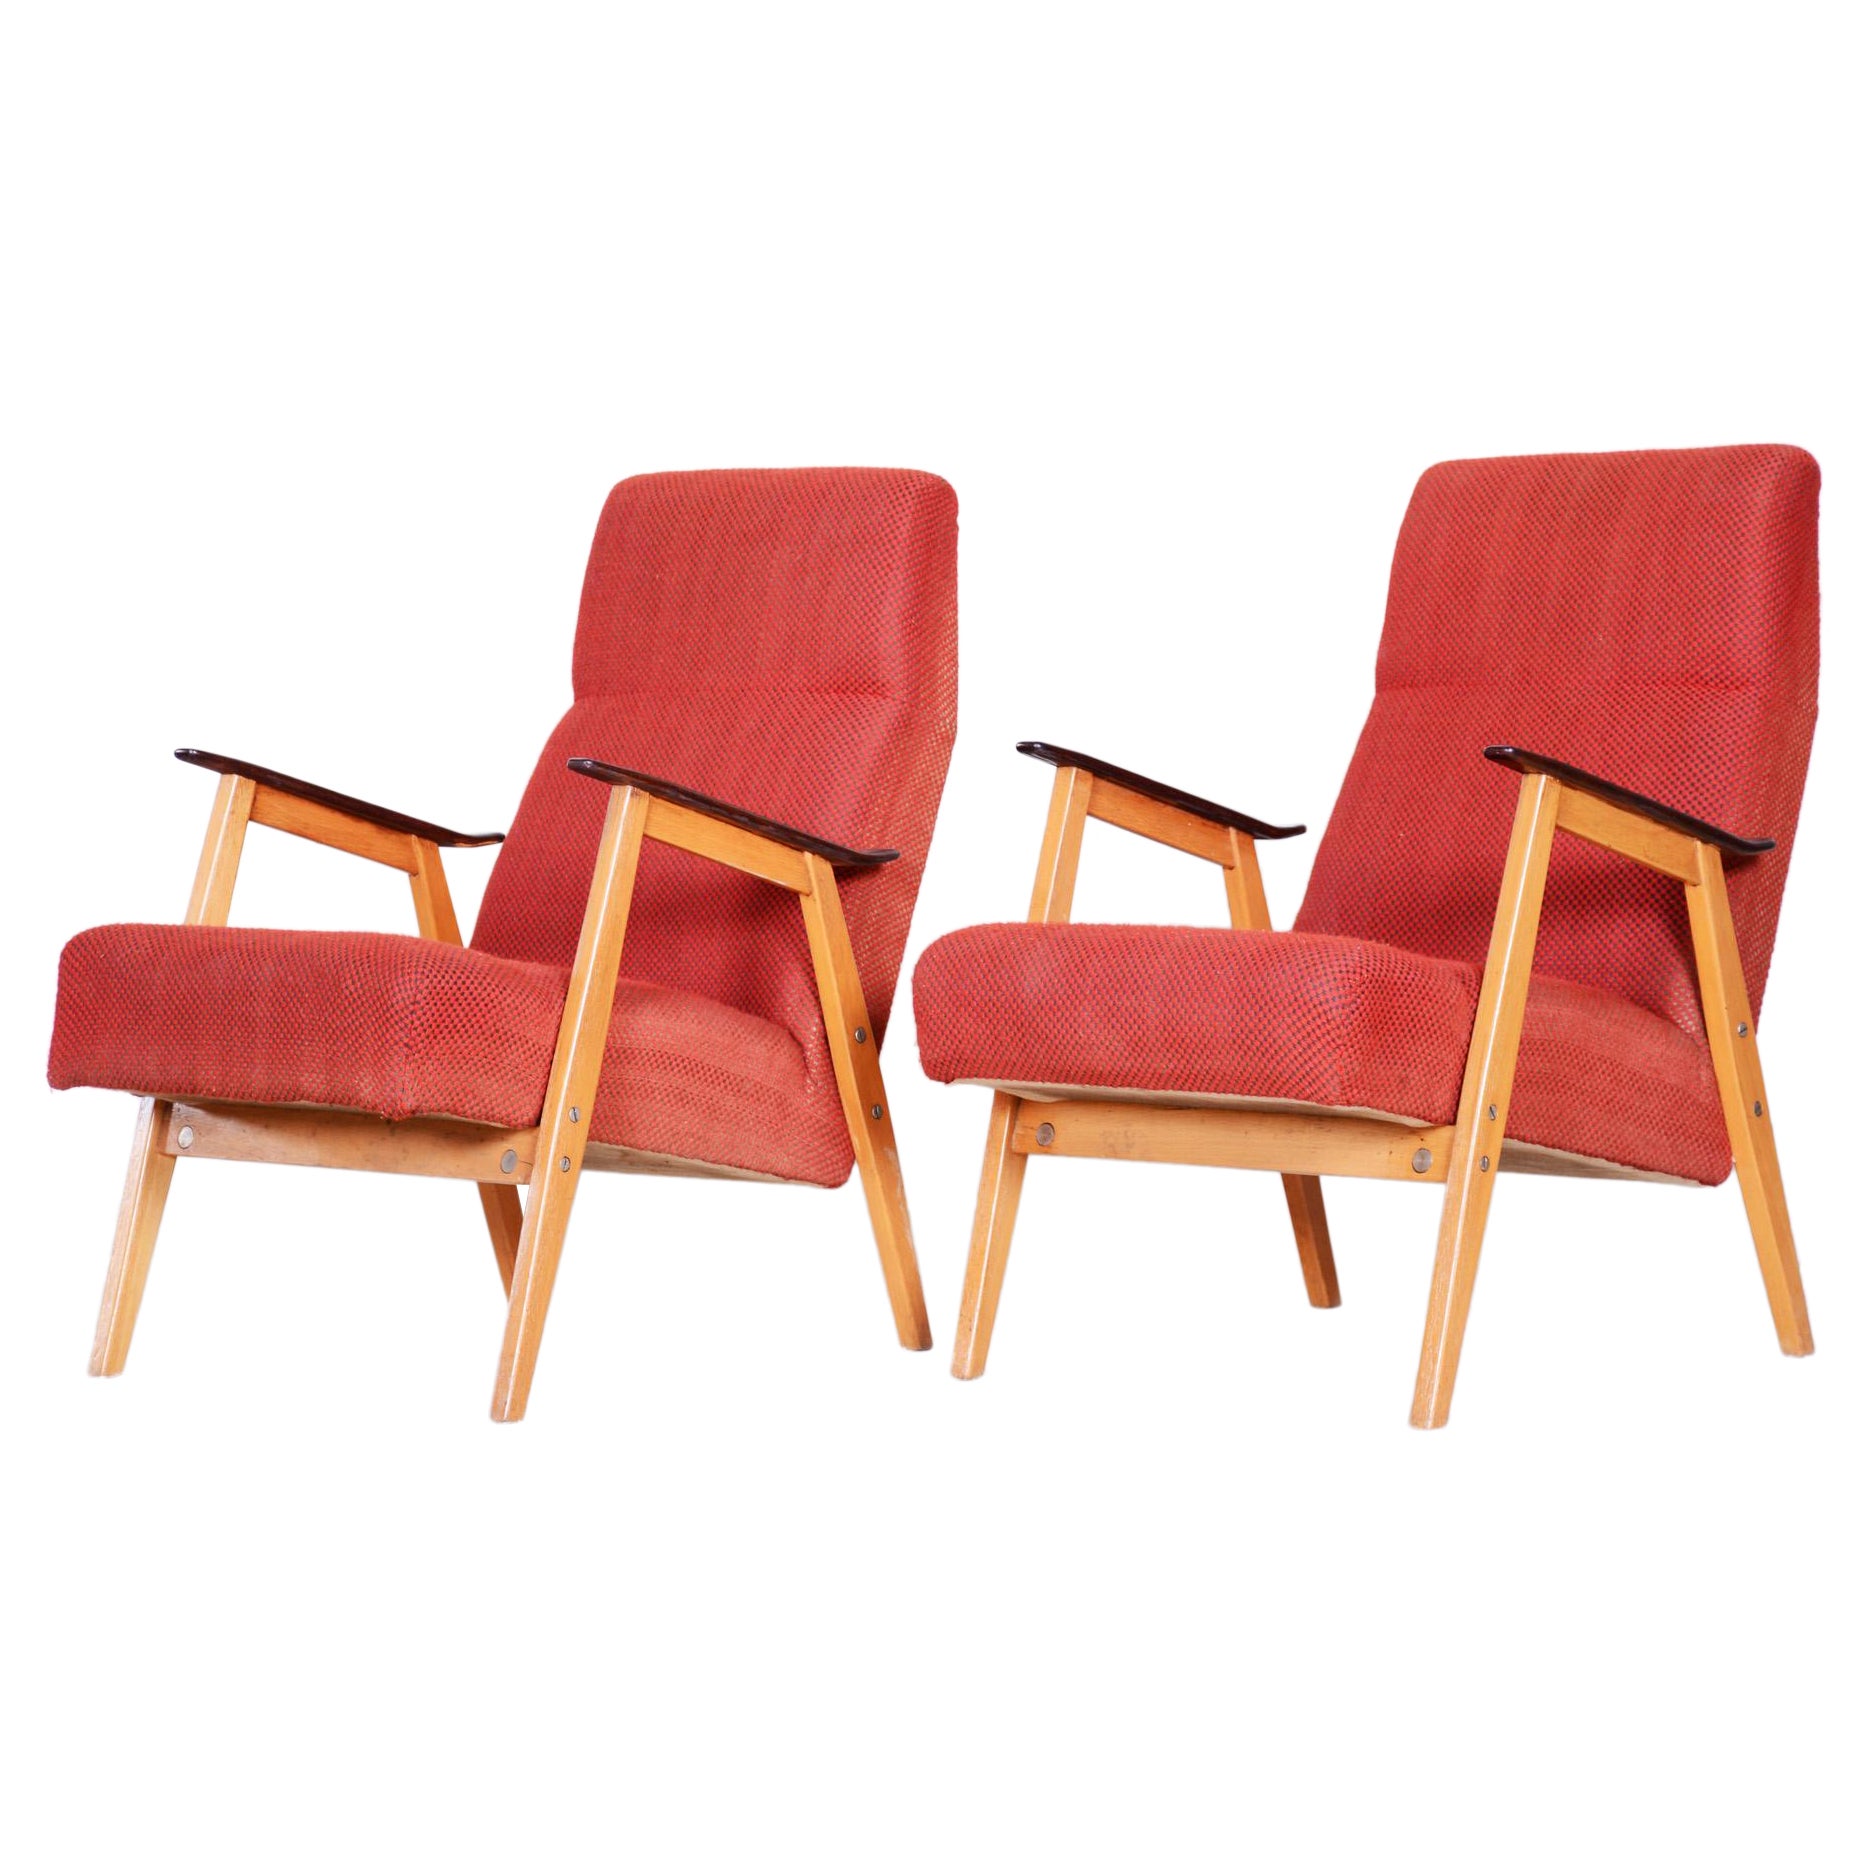 Restaurierte rote Sessel aus der Mitte des Jahrhunderts, hergestellt von Jaroslav mdek, Tschechien 1950, Paar